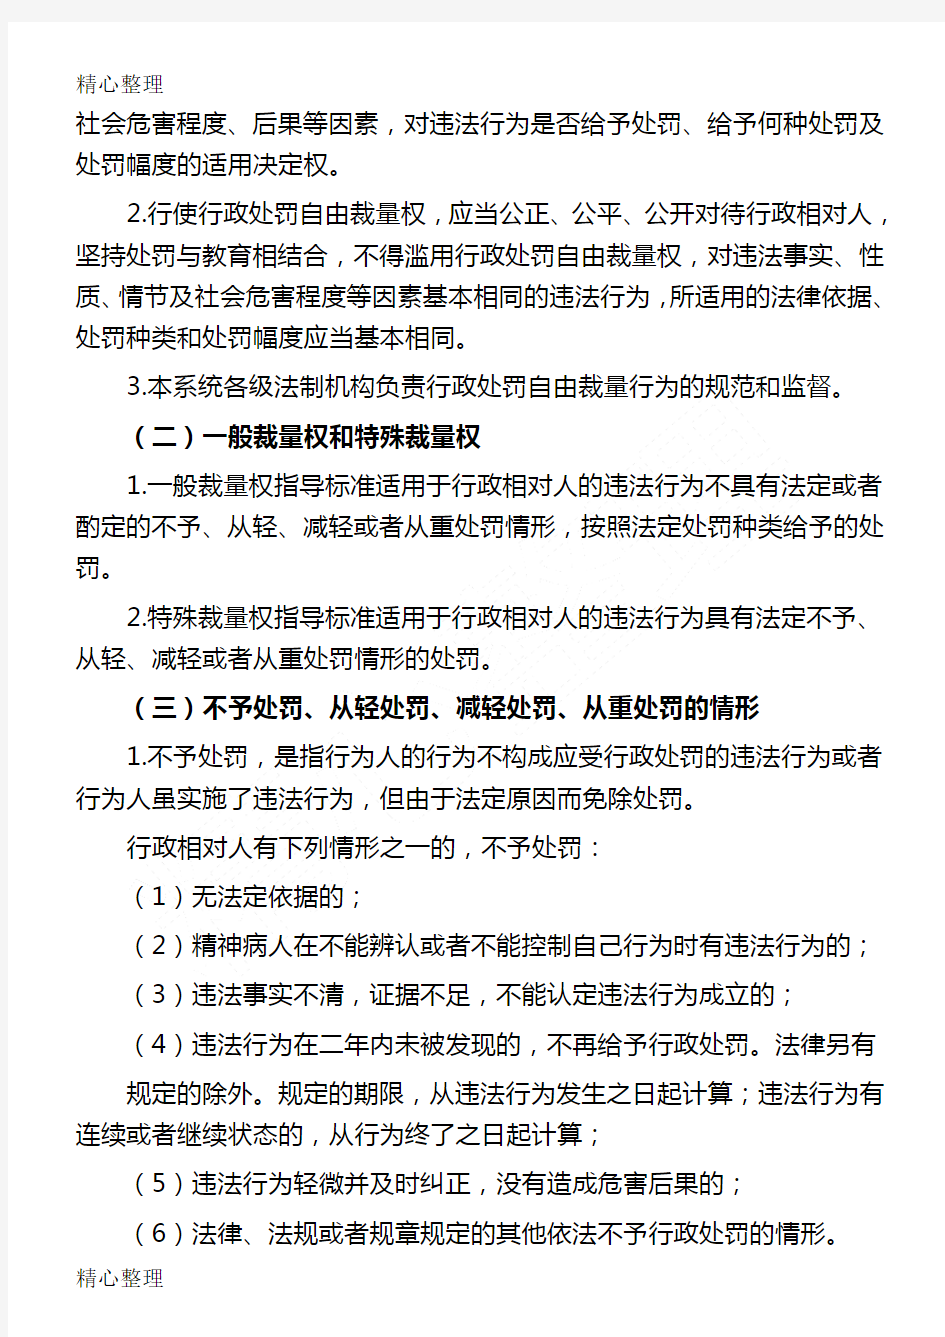 贵州省食品药品监督管理局守则行政处罚自由裁量权指导准则